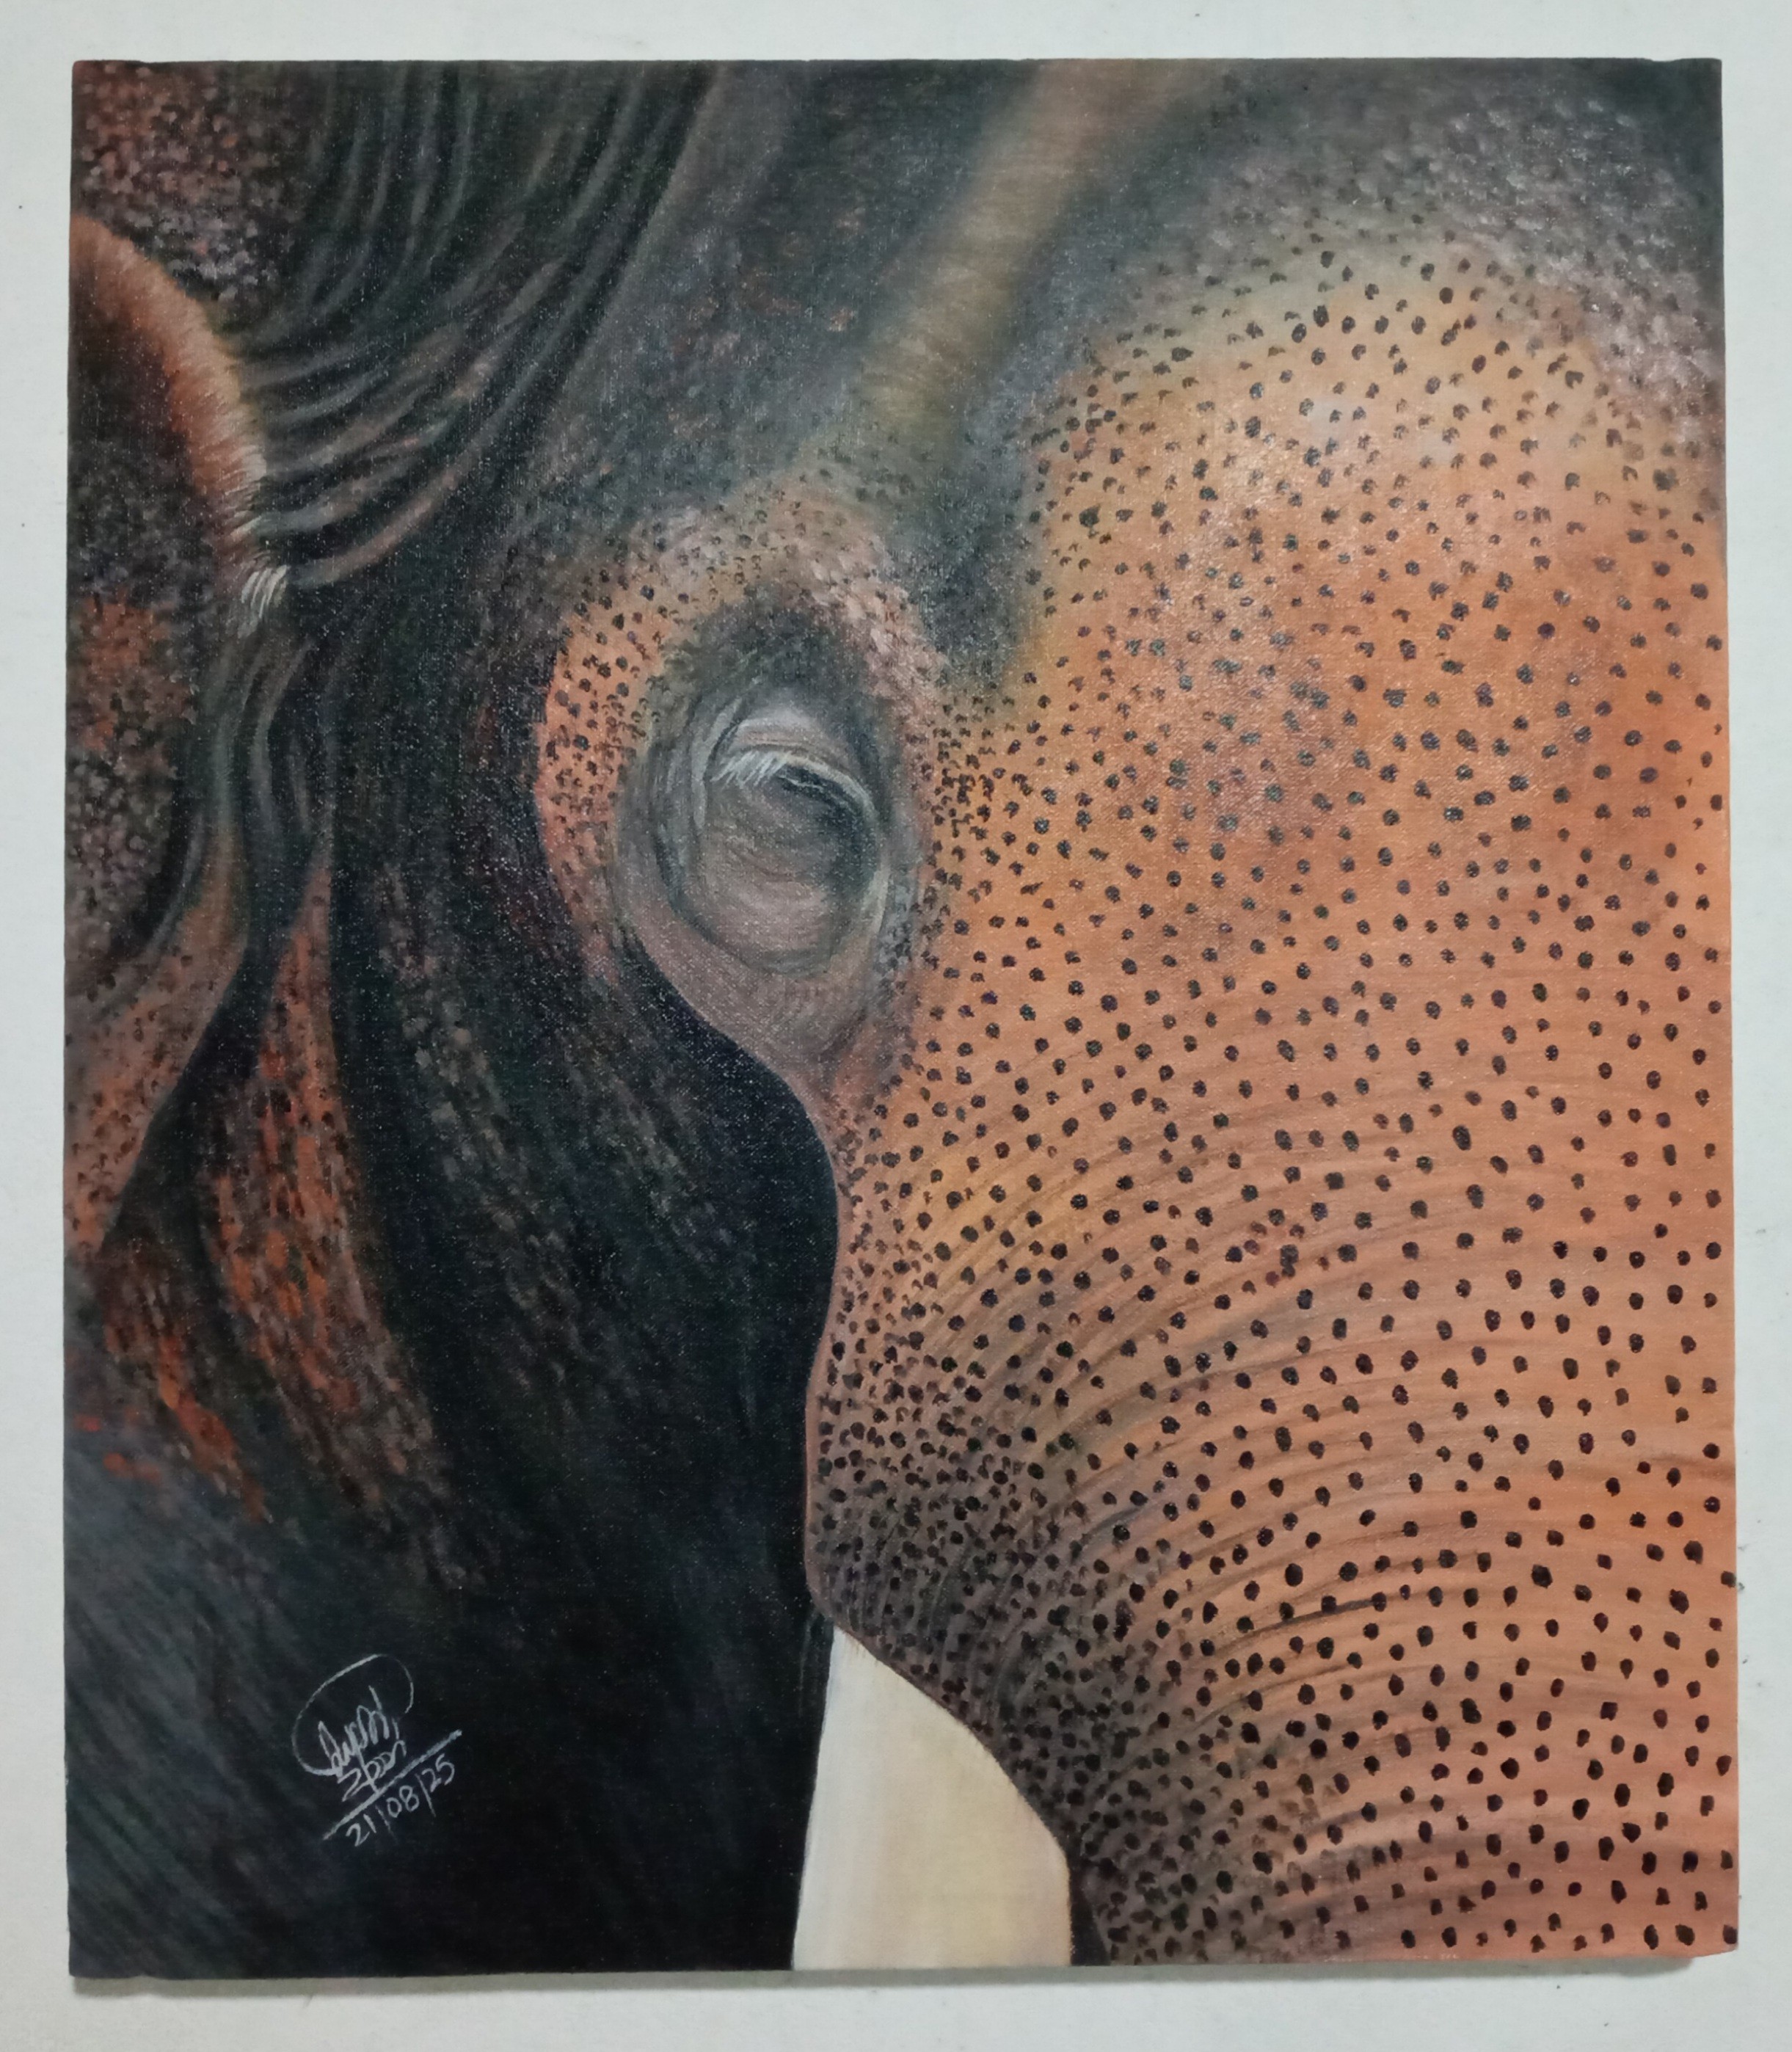 A lone elephant III by SUMITH FERNANDO